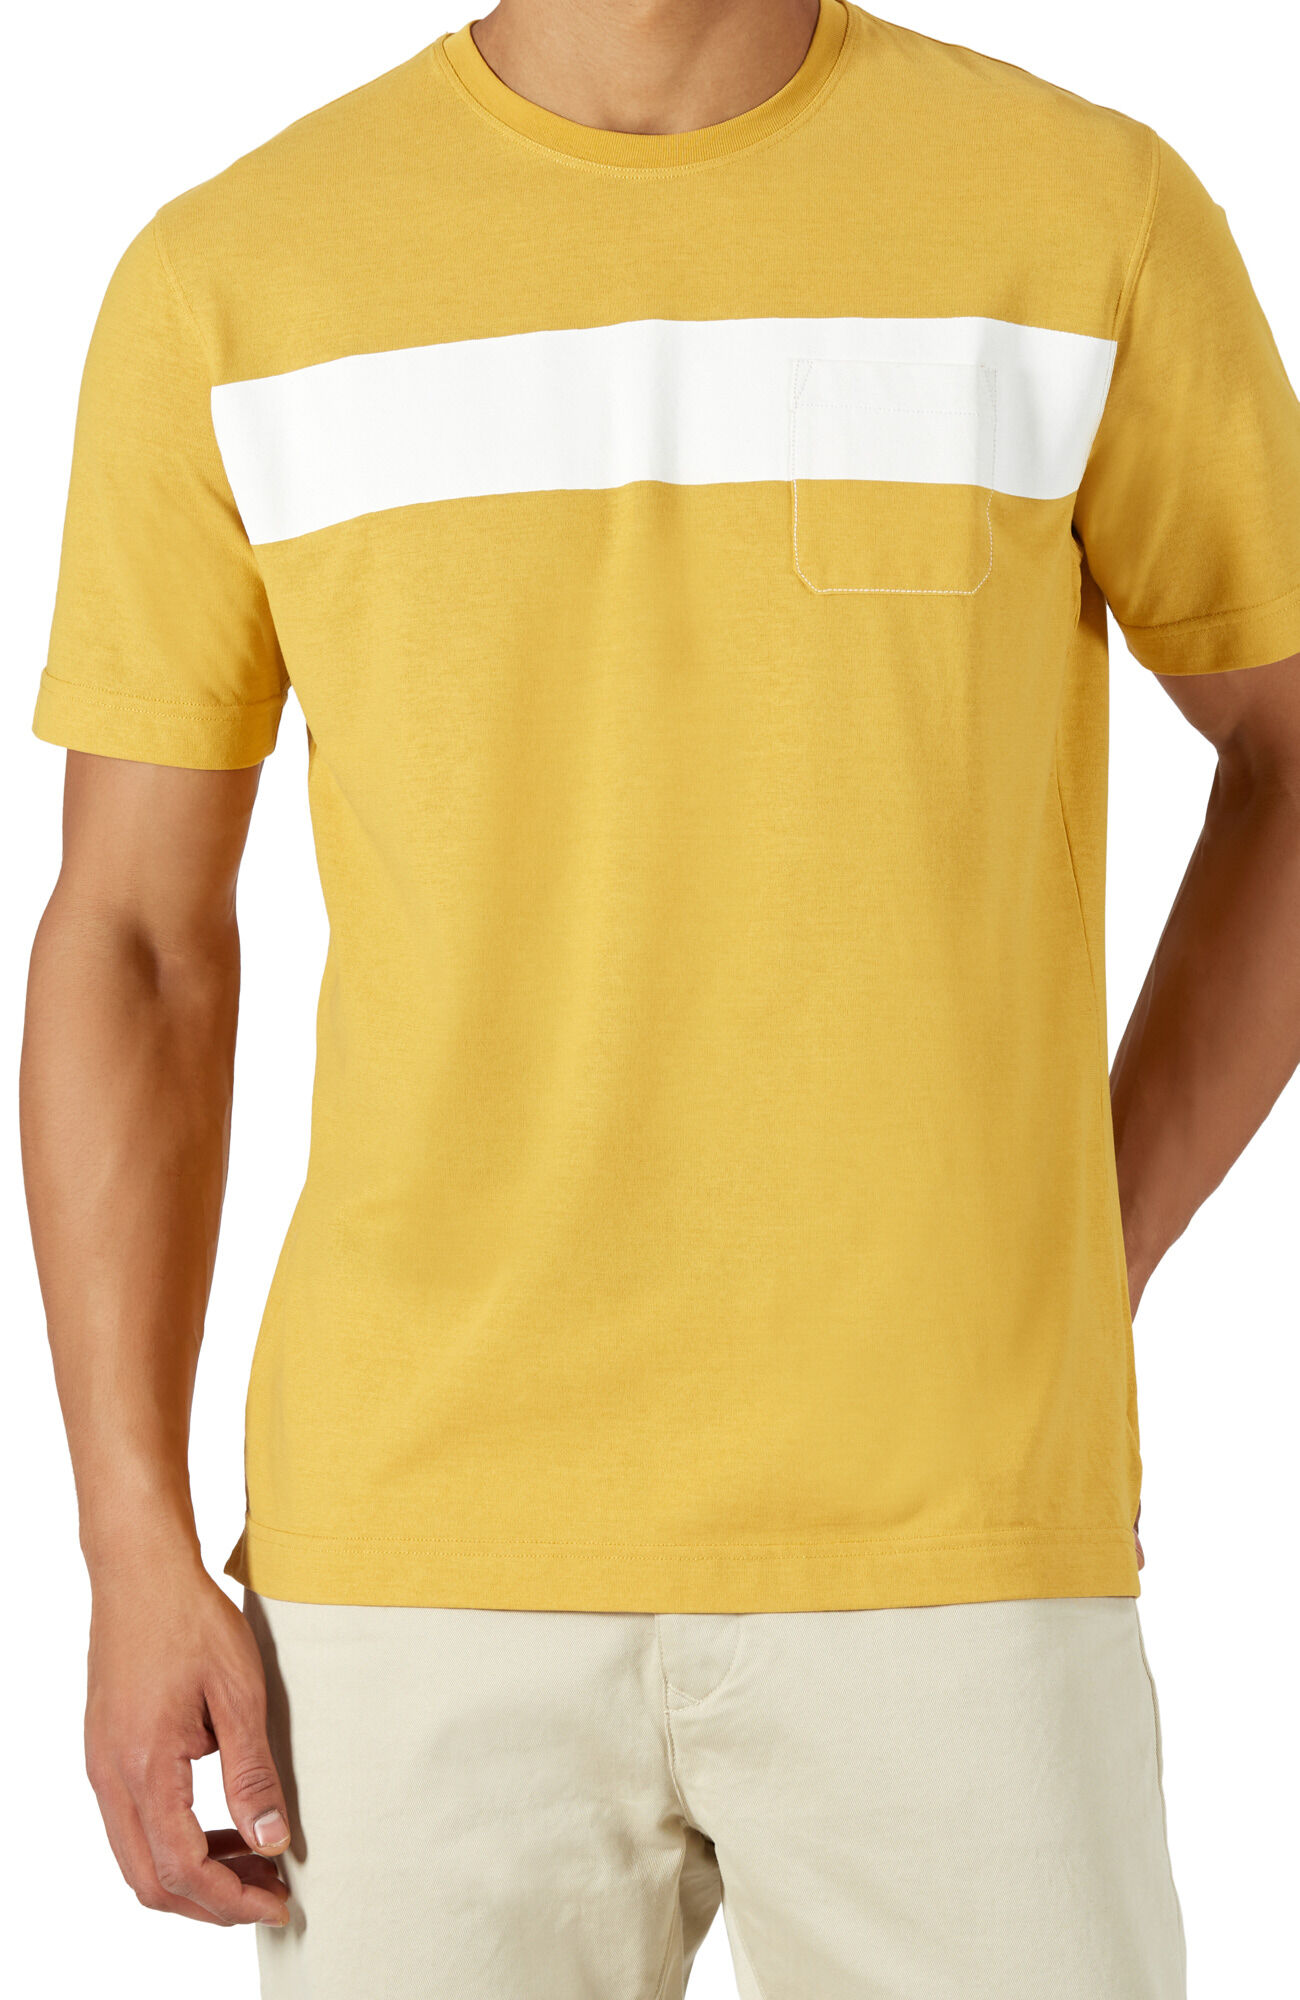 New Kids Print Tip Collar 100% Baumwolle Assn Polo t-Shirt Top